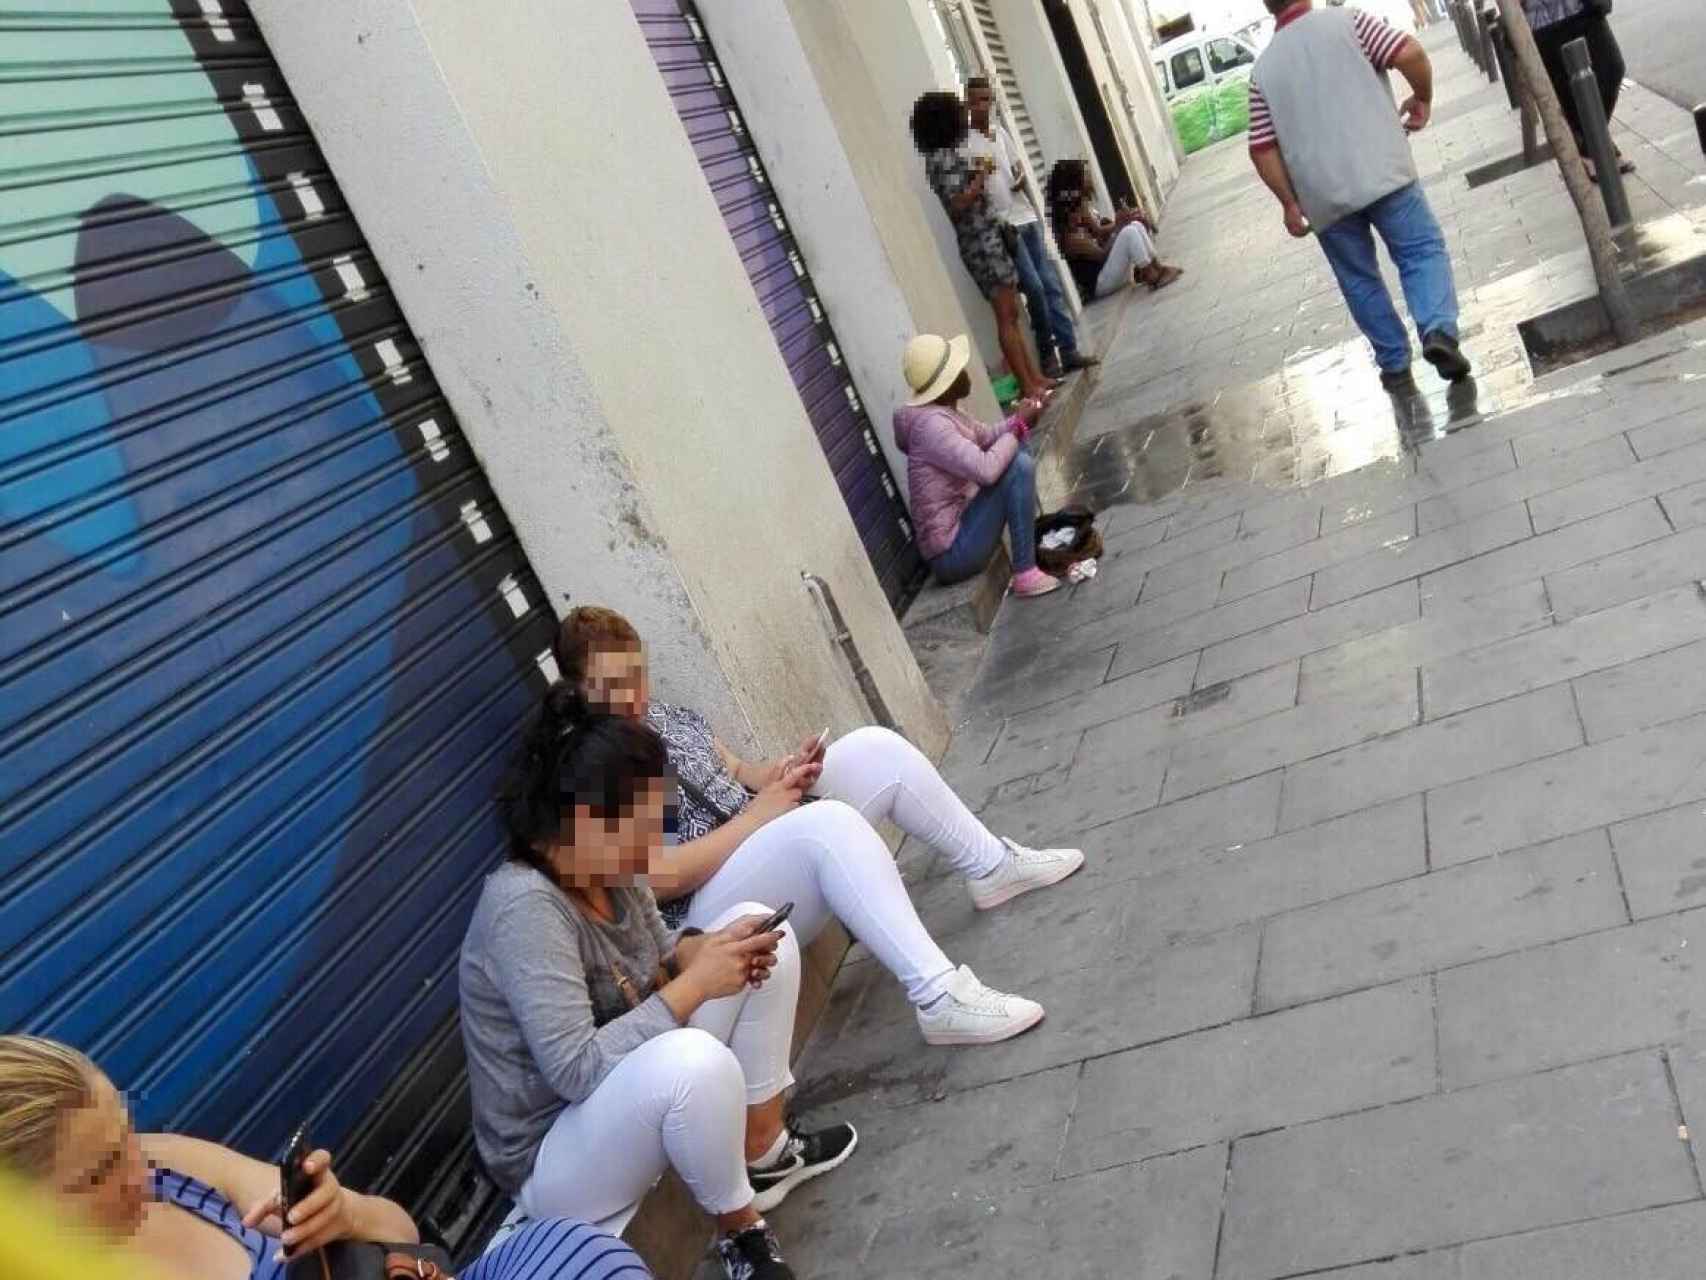 Algunas mujeres esperan a sus clientes sentadas en los escalones de los locales de la calle